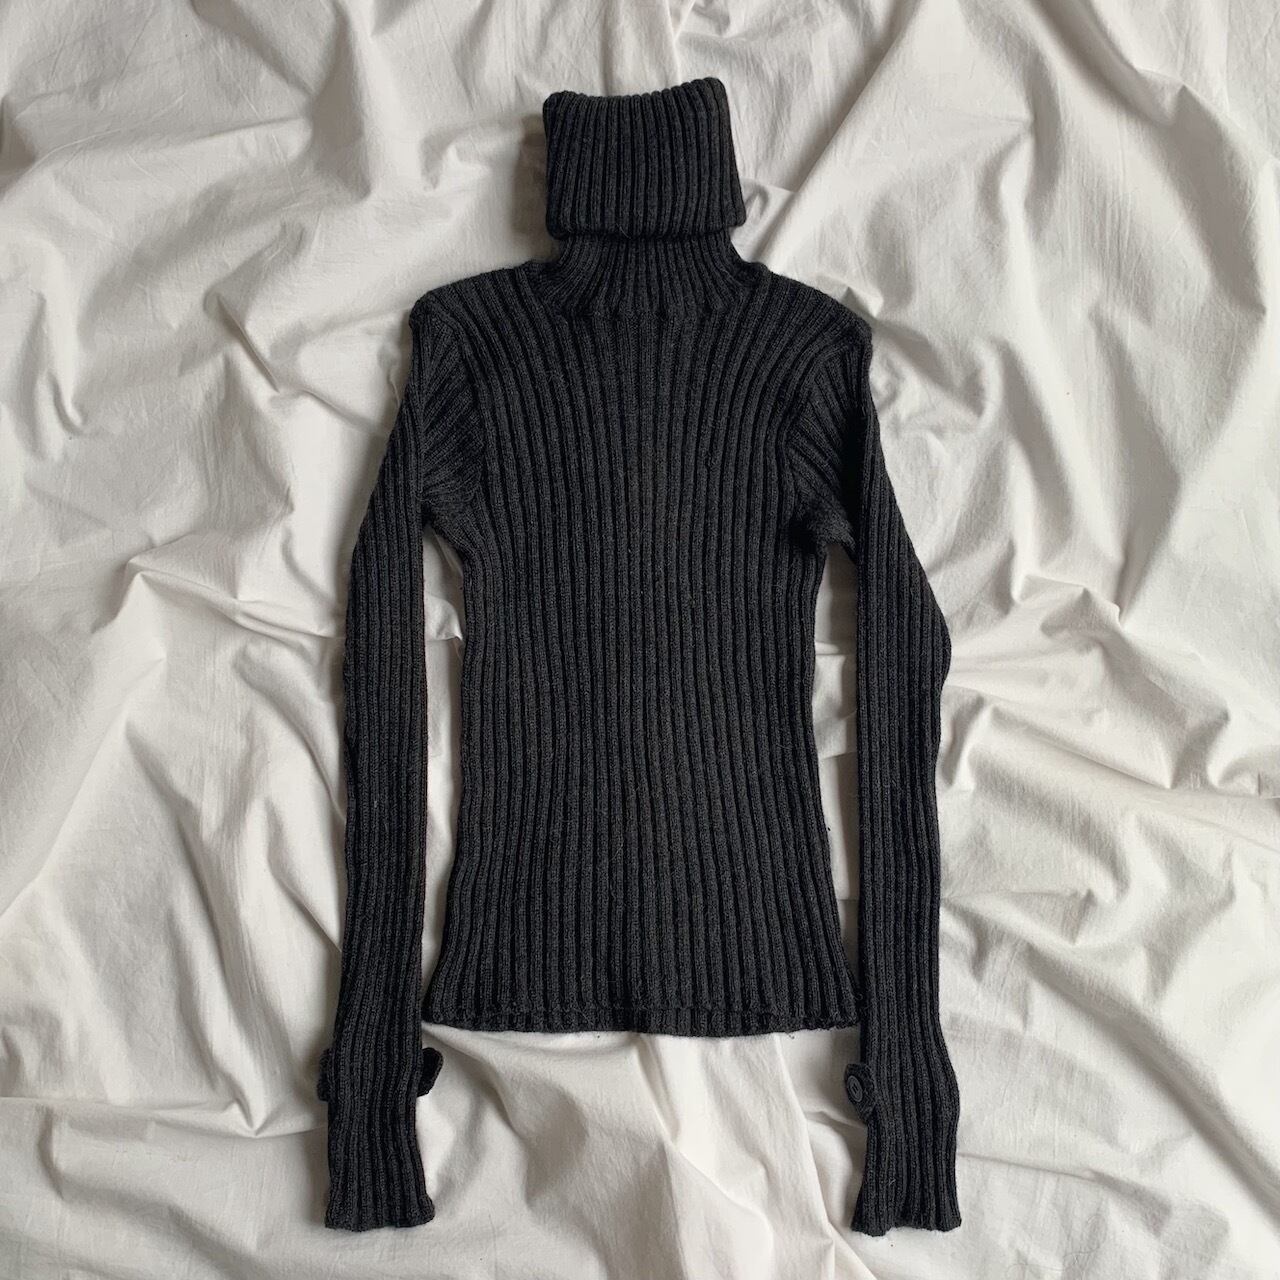 agnes b. design turtleneck knit made in France | marianas vintage